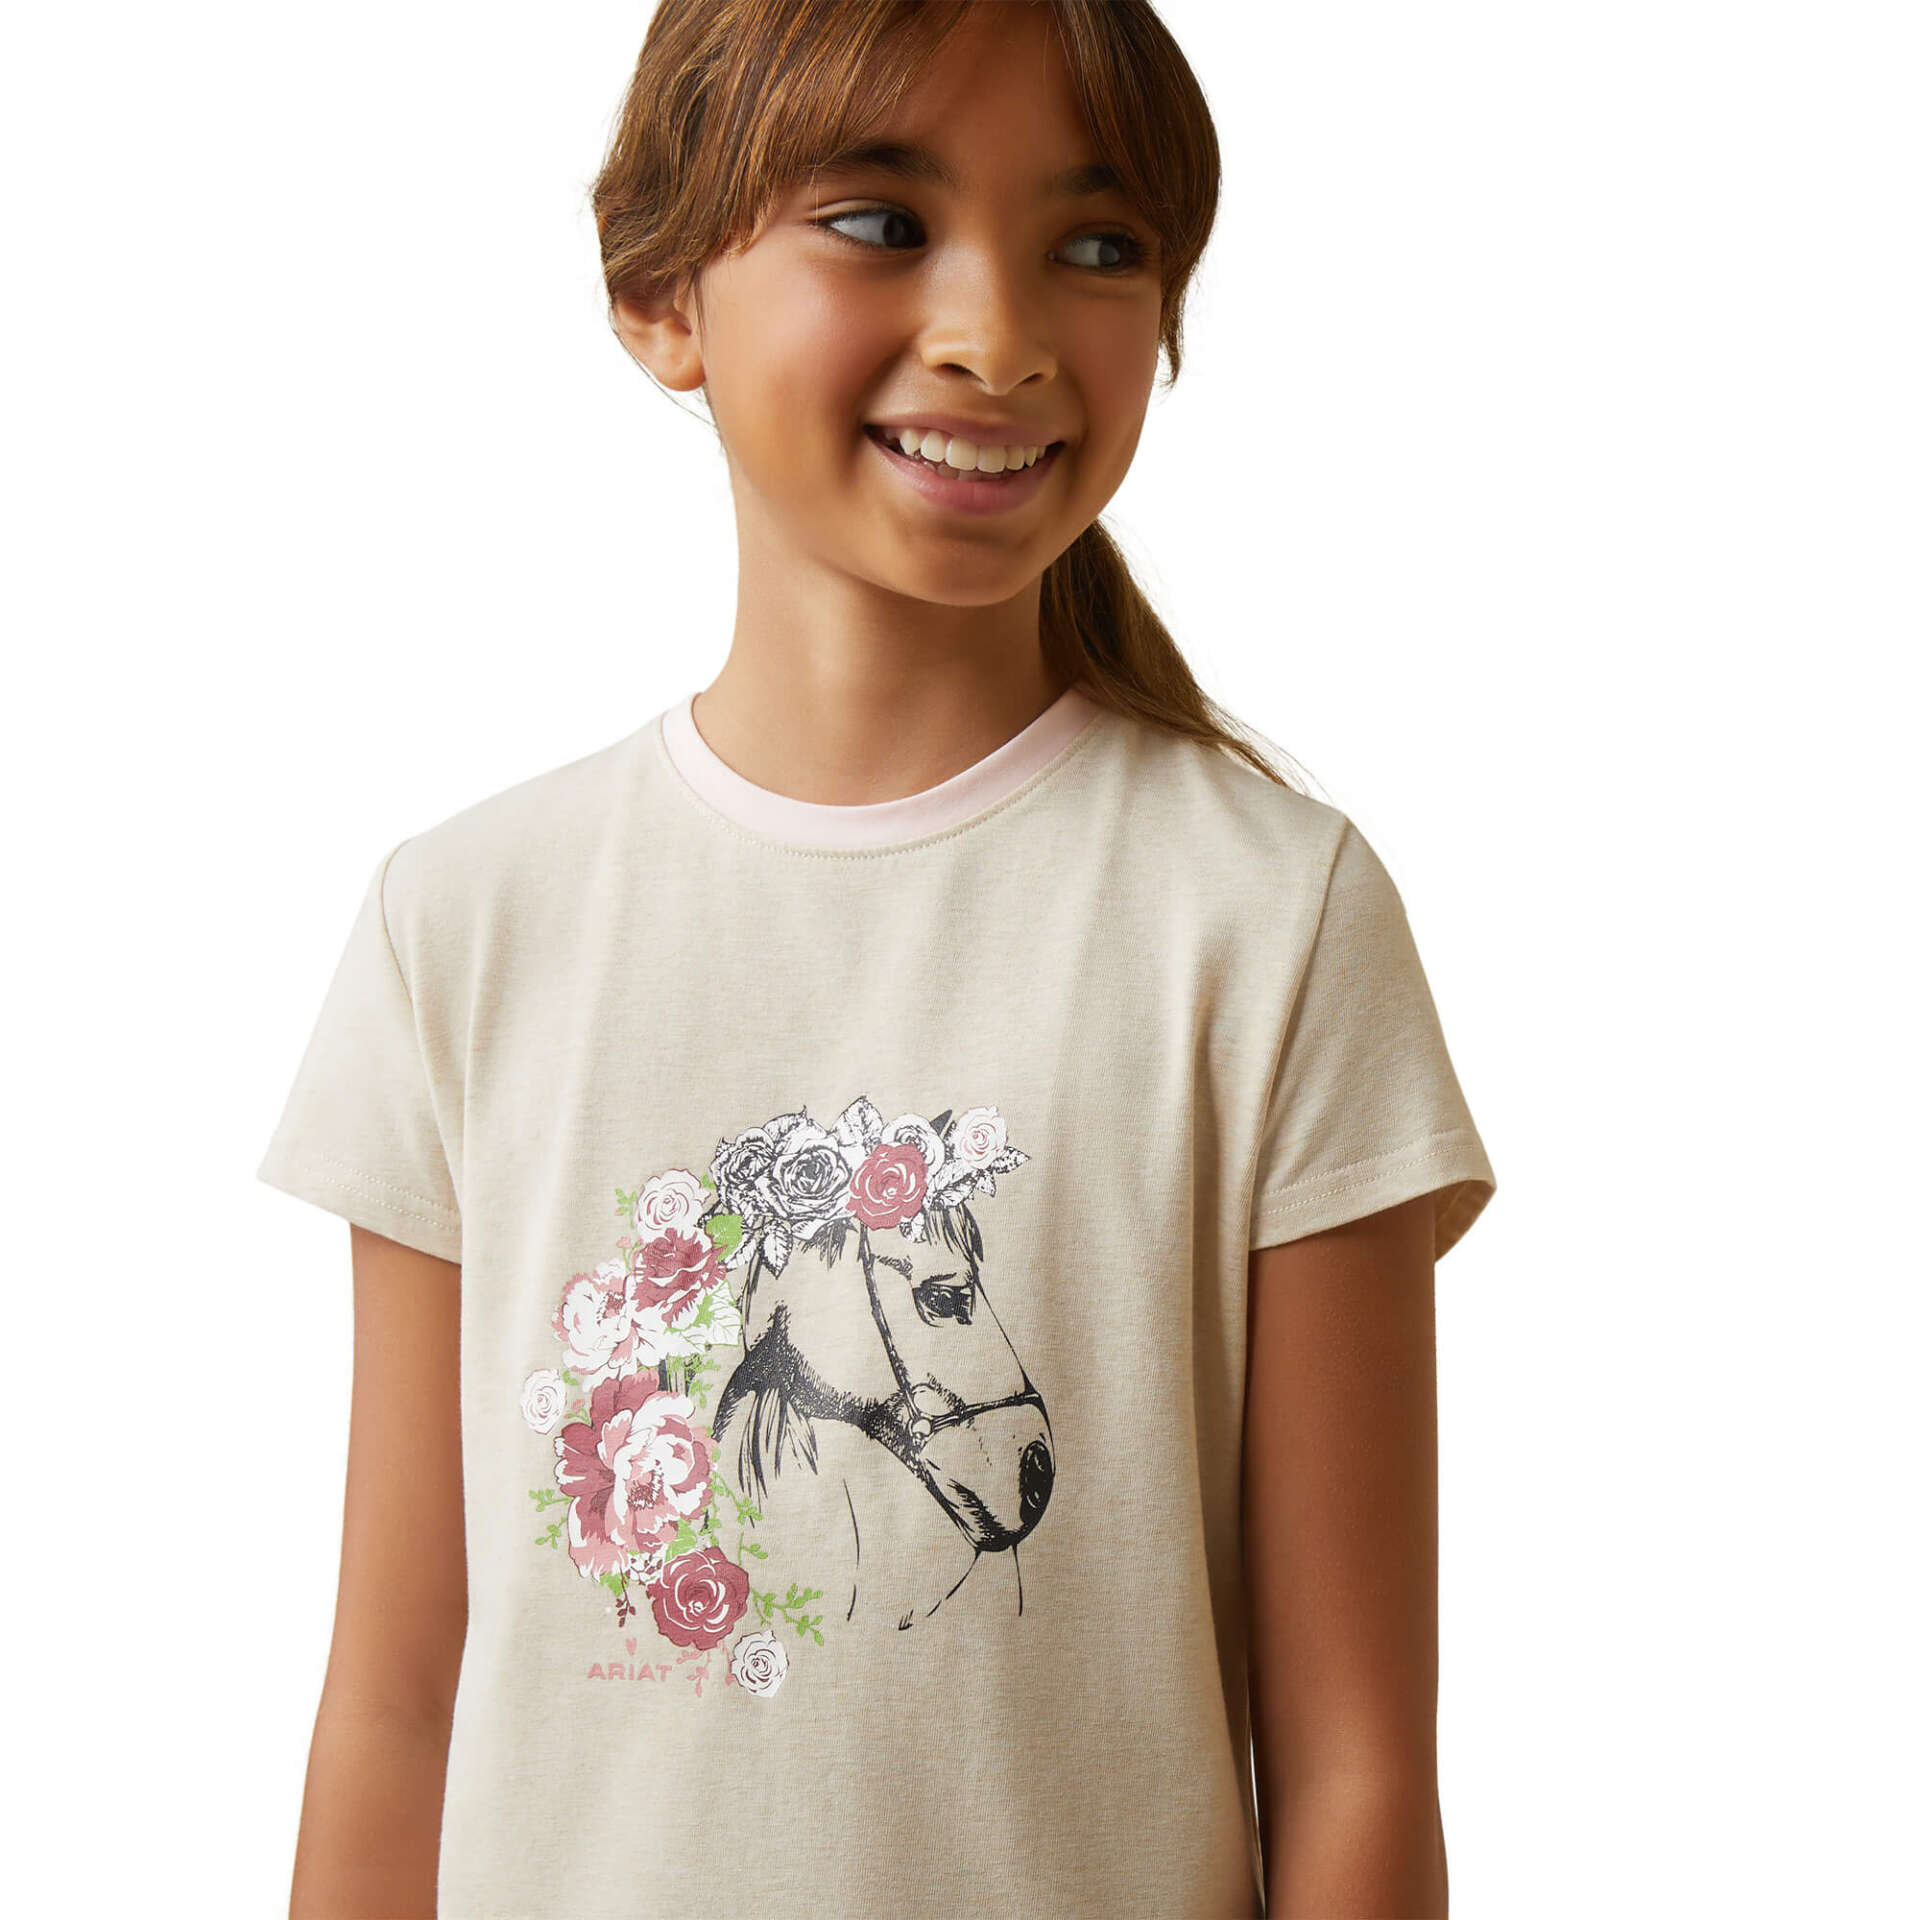 Ariat Kids Flora T-Shirt